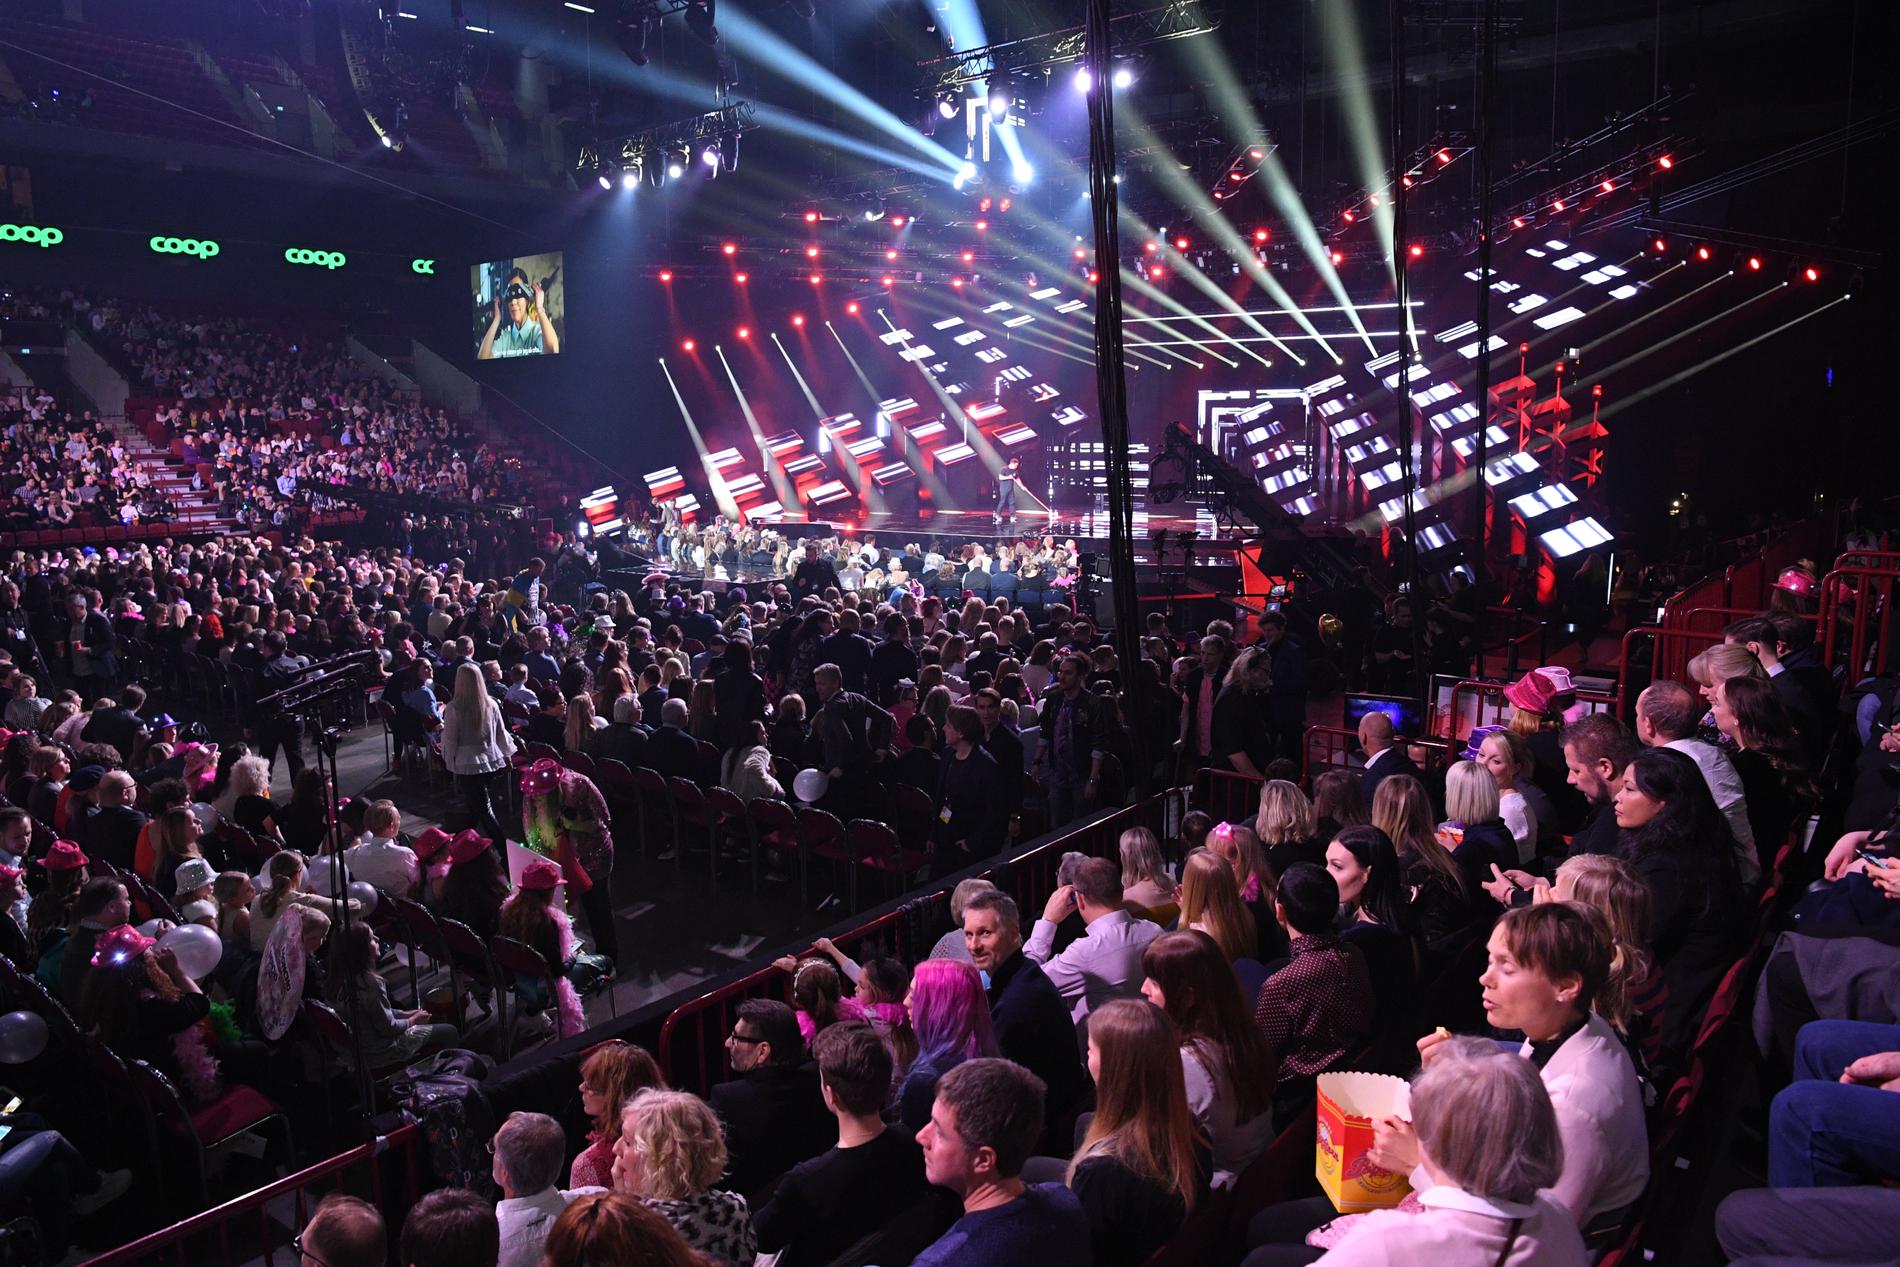 Fullsatt på Malmö Arena inför deltävling 3 i Melodifestivalen 2018.